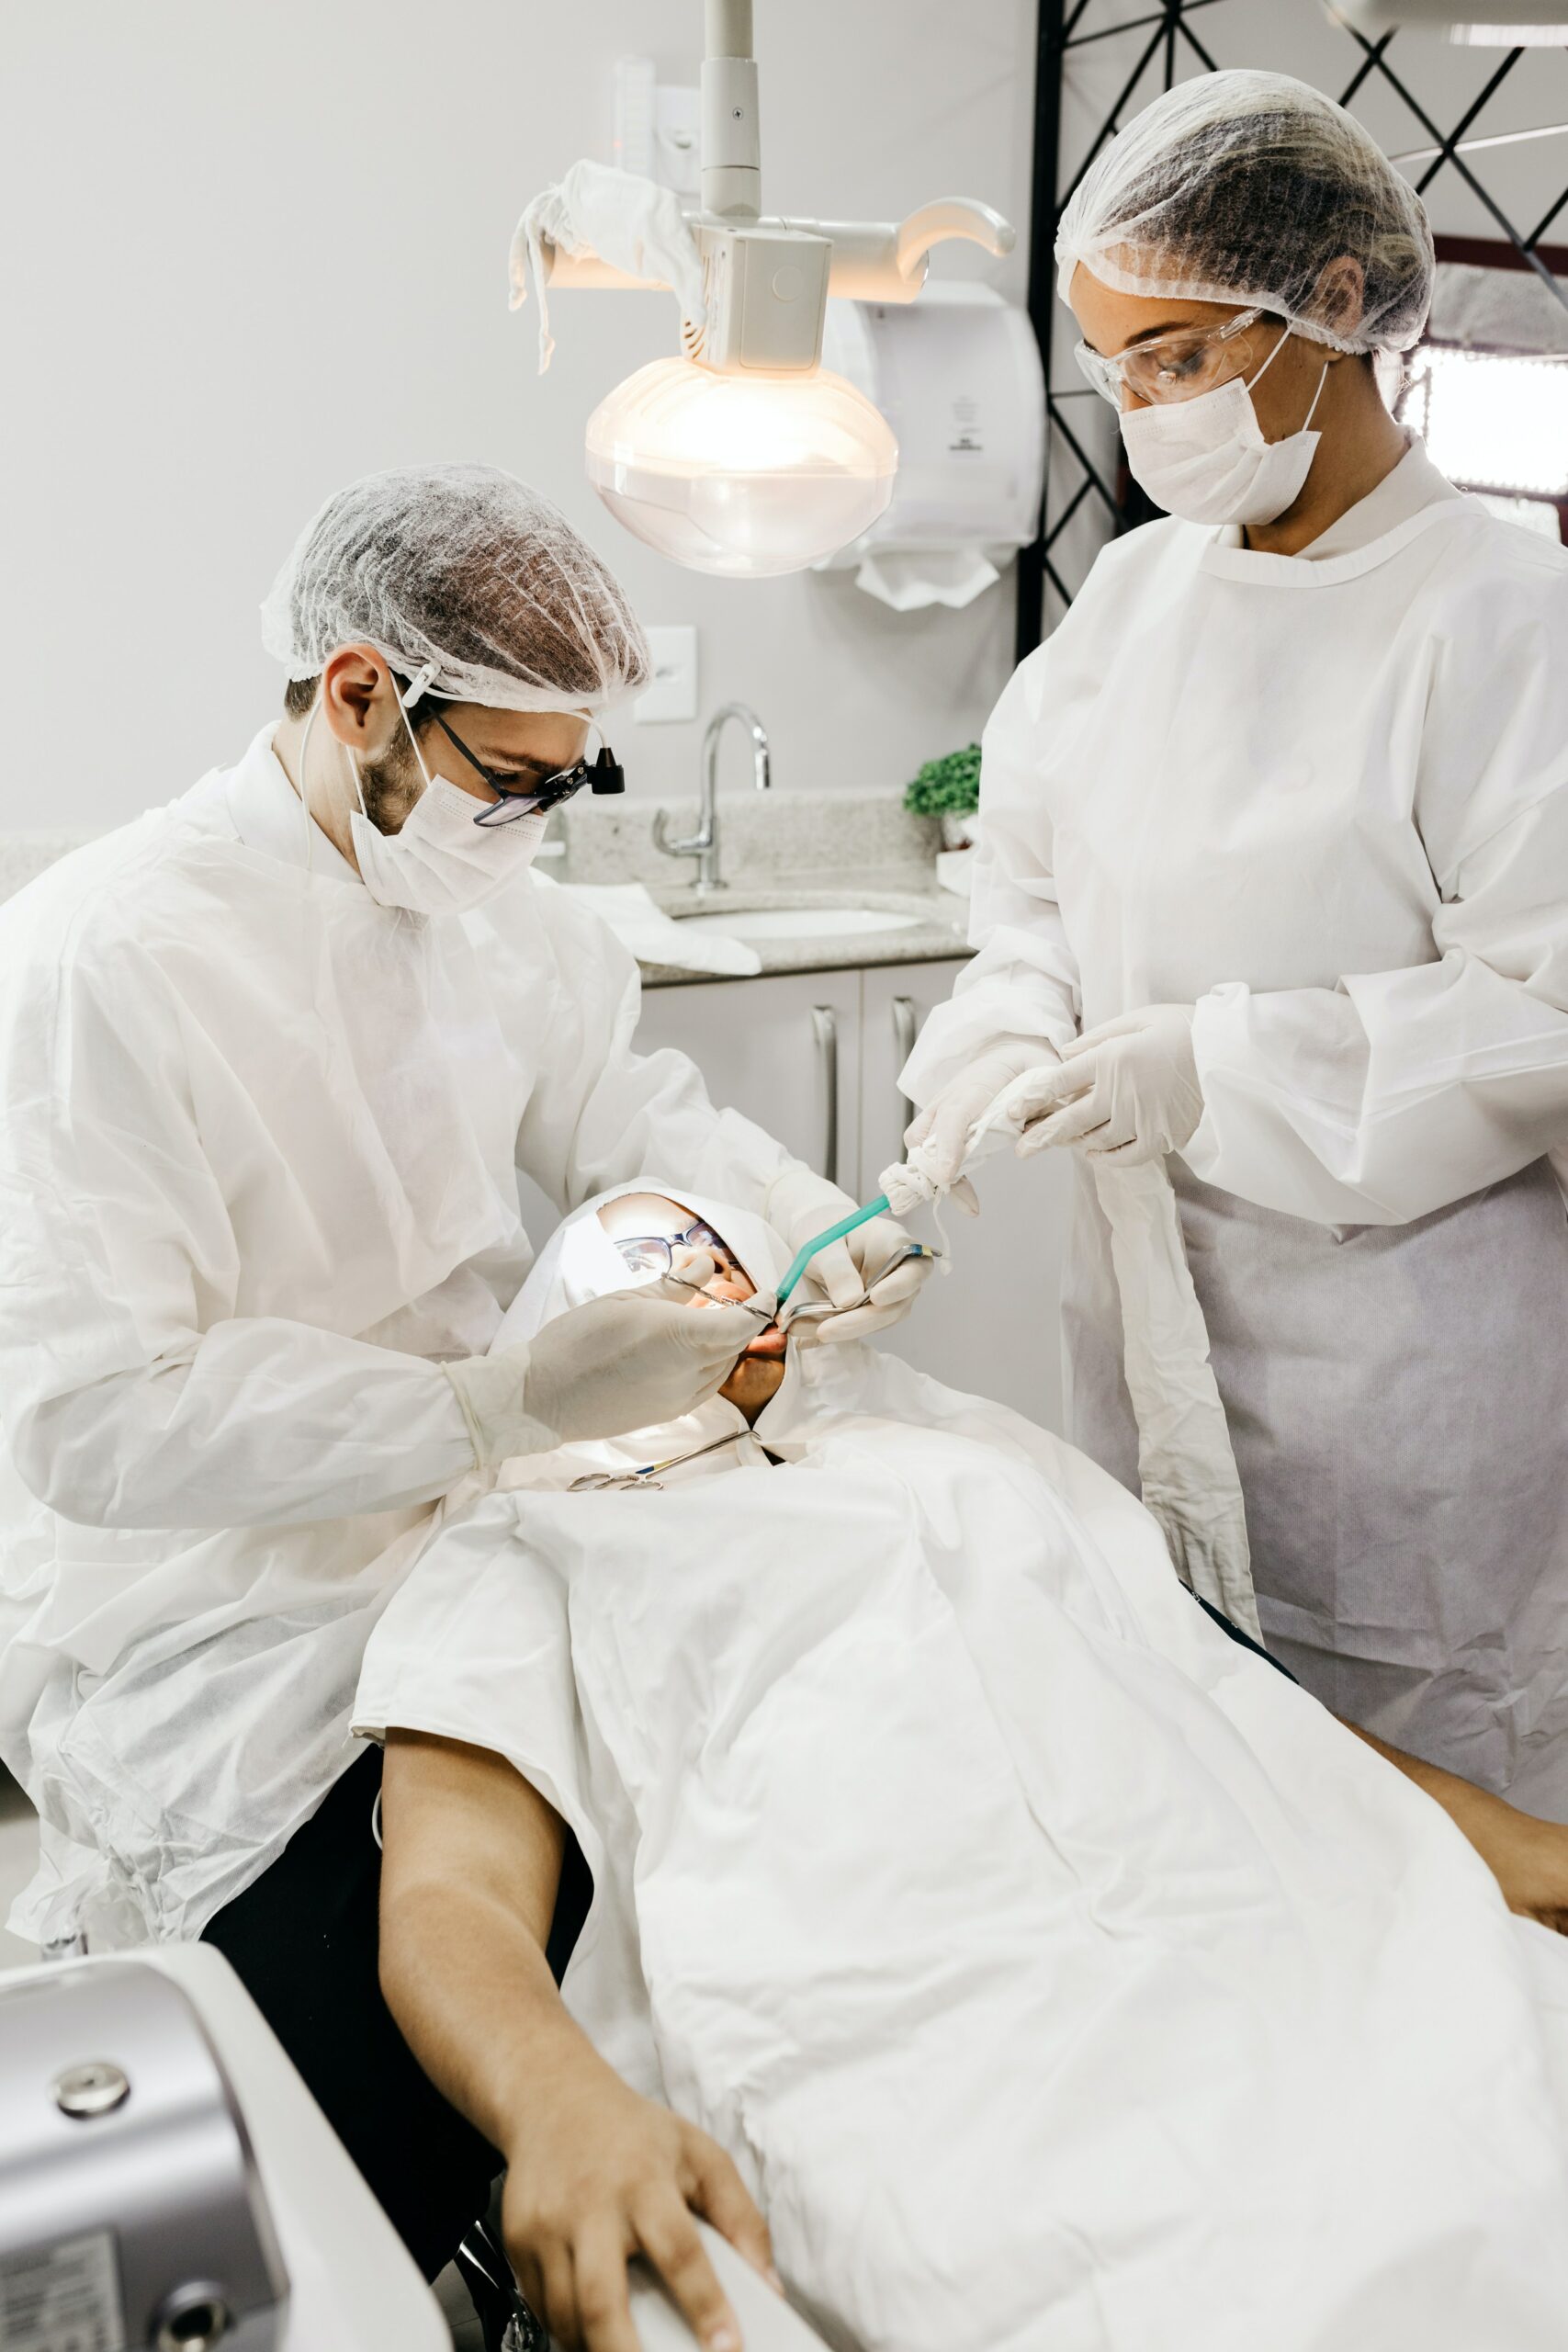 Assistante dentaire: 7 éléments essentiels à mettre dans son CV